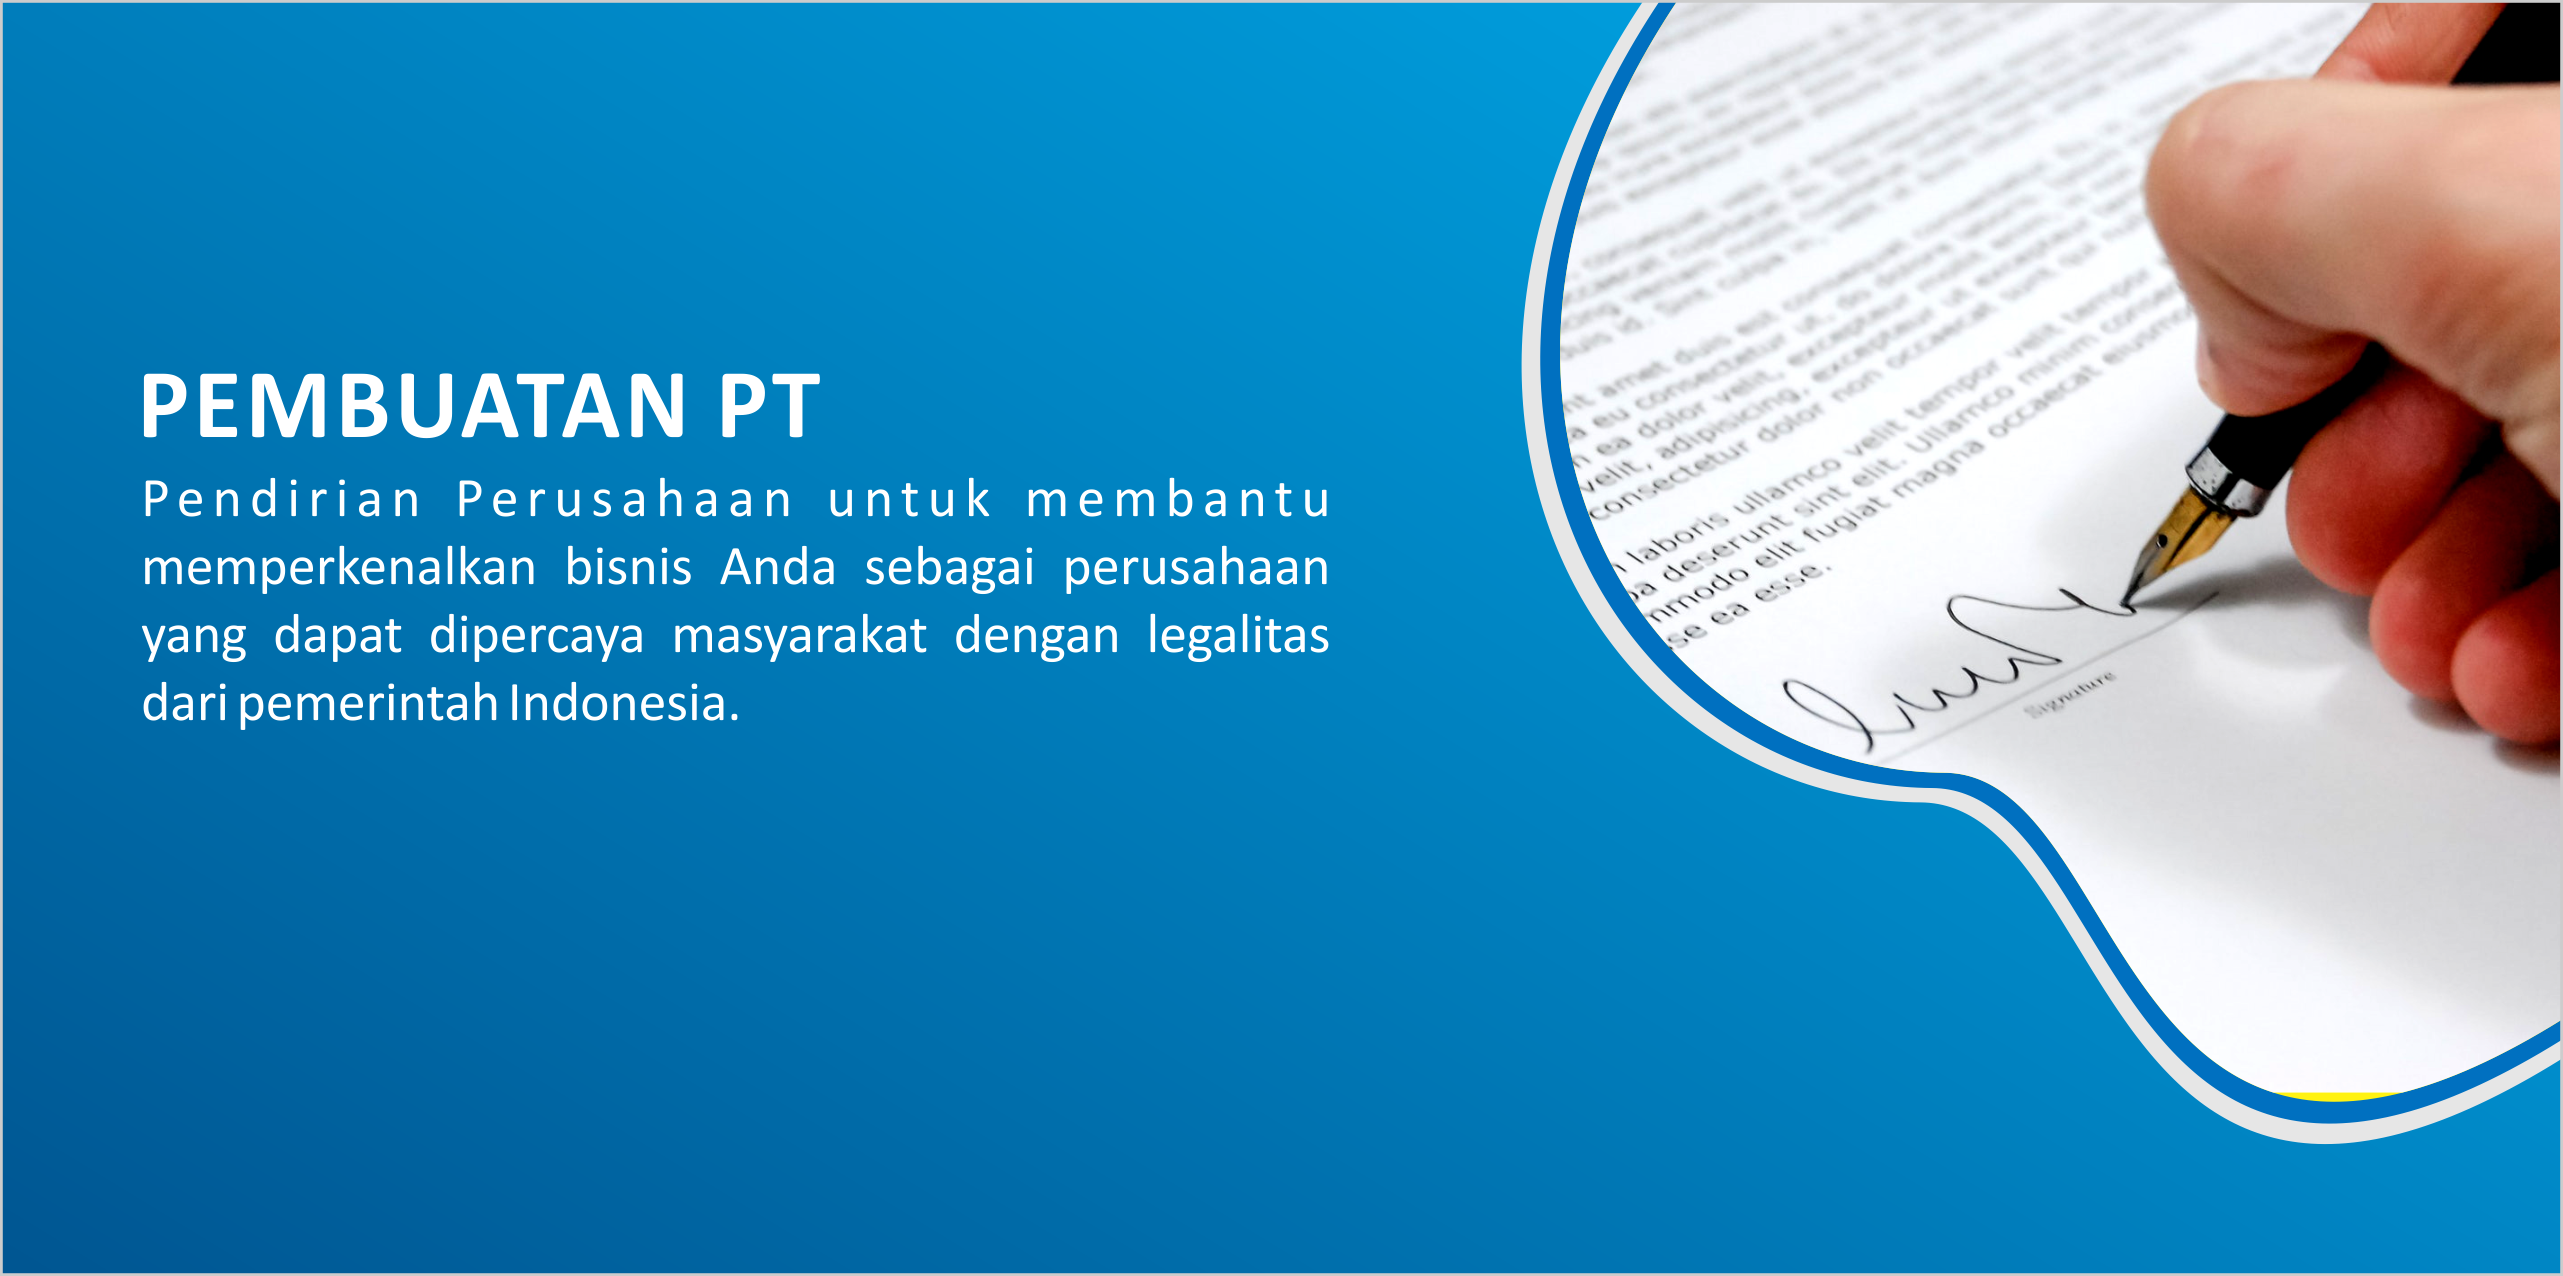 Konsultasi Pajak | Manajemen Pajak | Konsultan Pajak Di Bali | Jasa Pembuatan PT | jasa Pembuatan CV | Jasa Pembuatan Legal